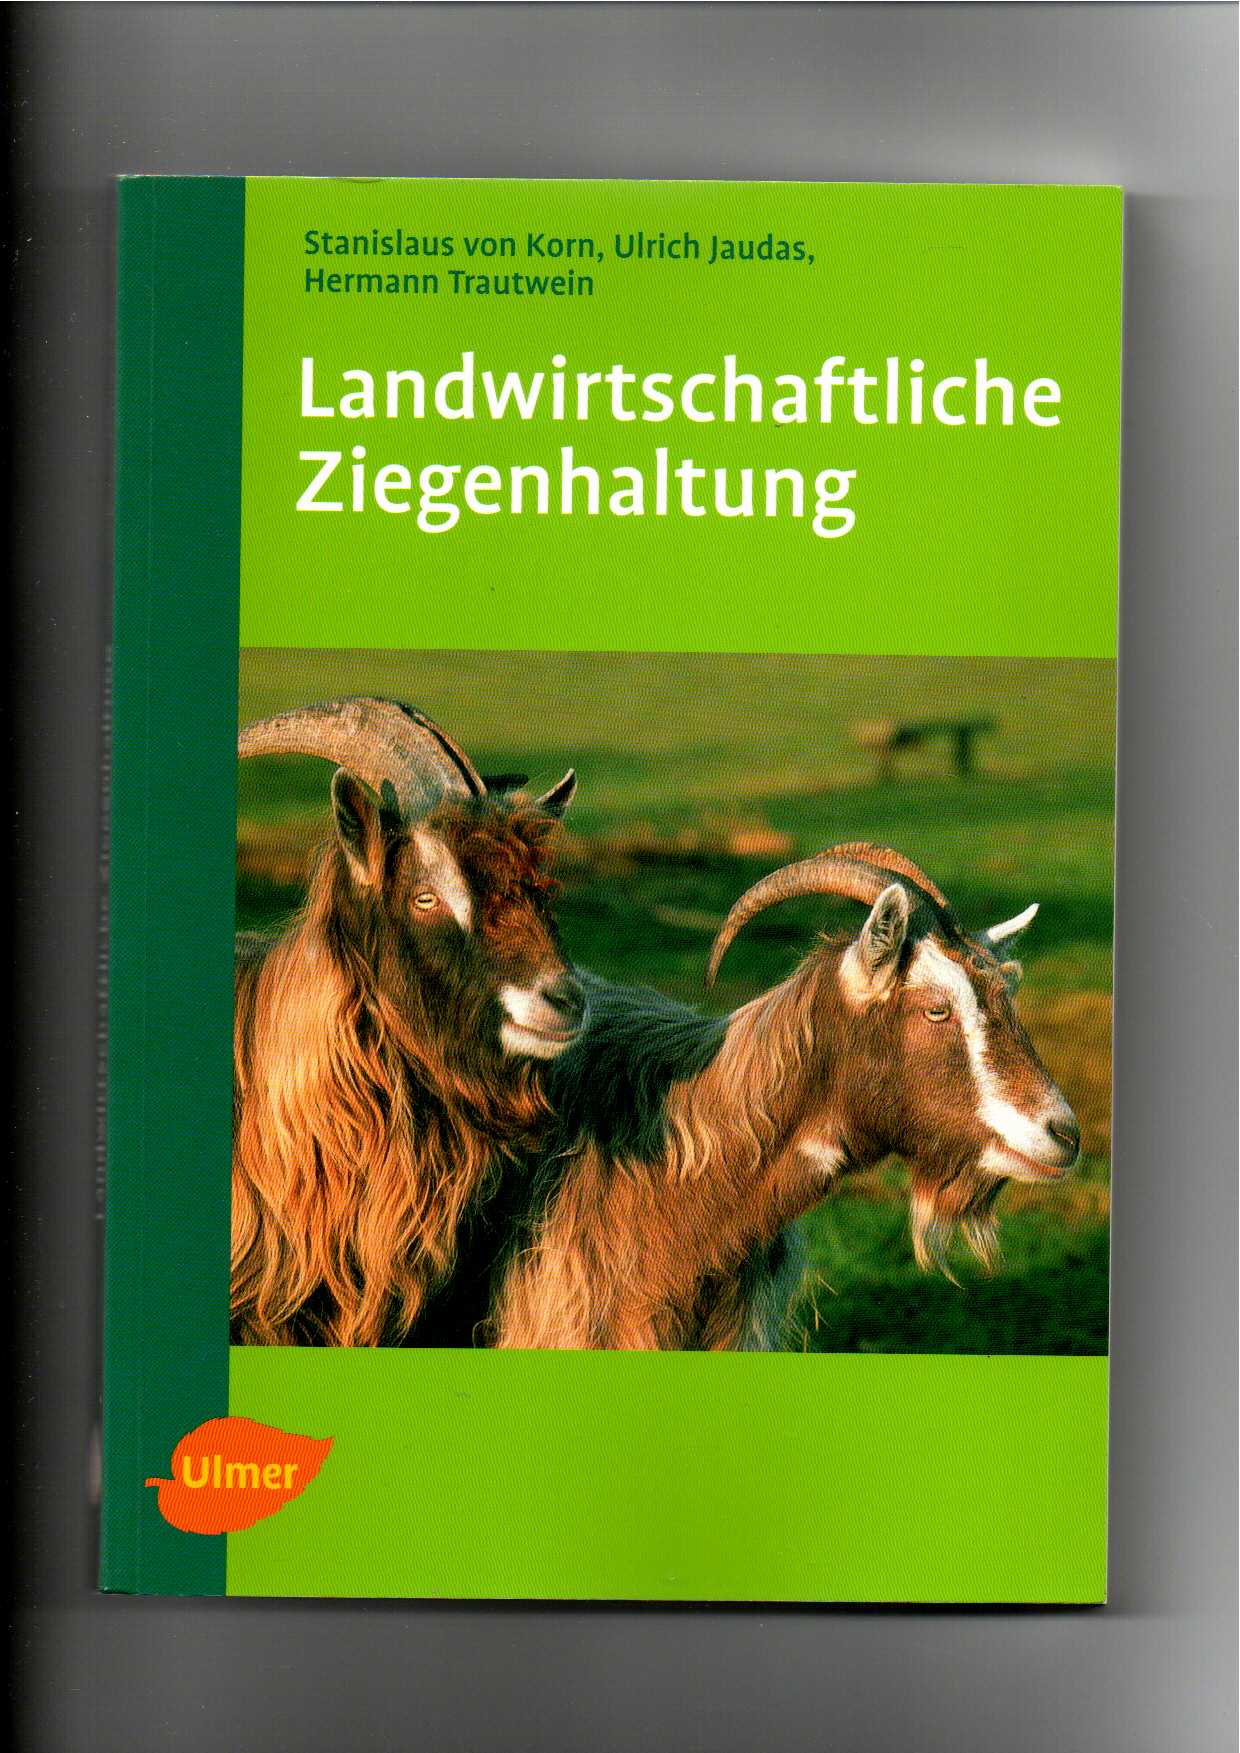 Stanislaus von Korn, Ulrich Jaudas, Landwirtschaftliche Ziegenhaltung - Korn, Stanislaus von, Ulrich Jaudas und Hermann Trautwein